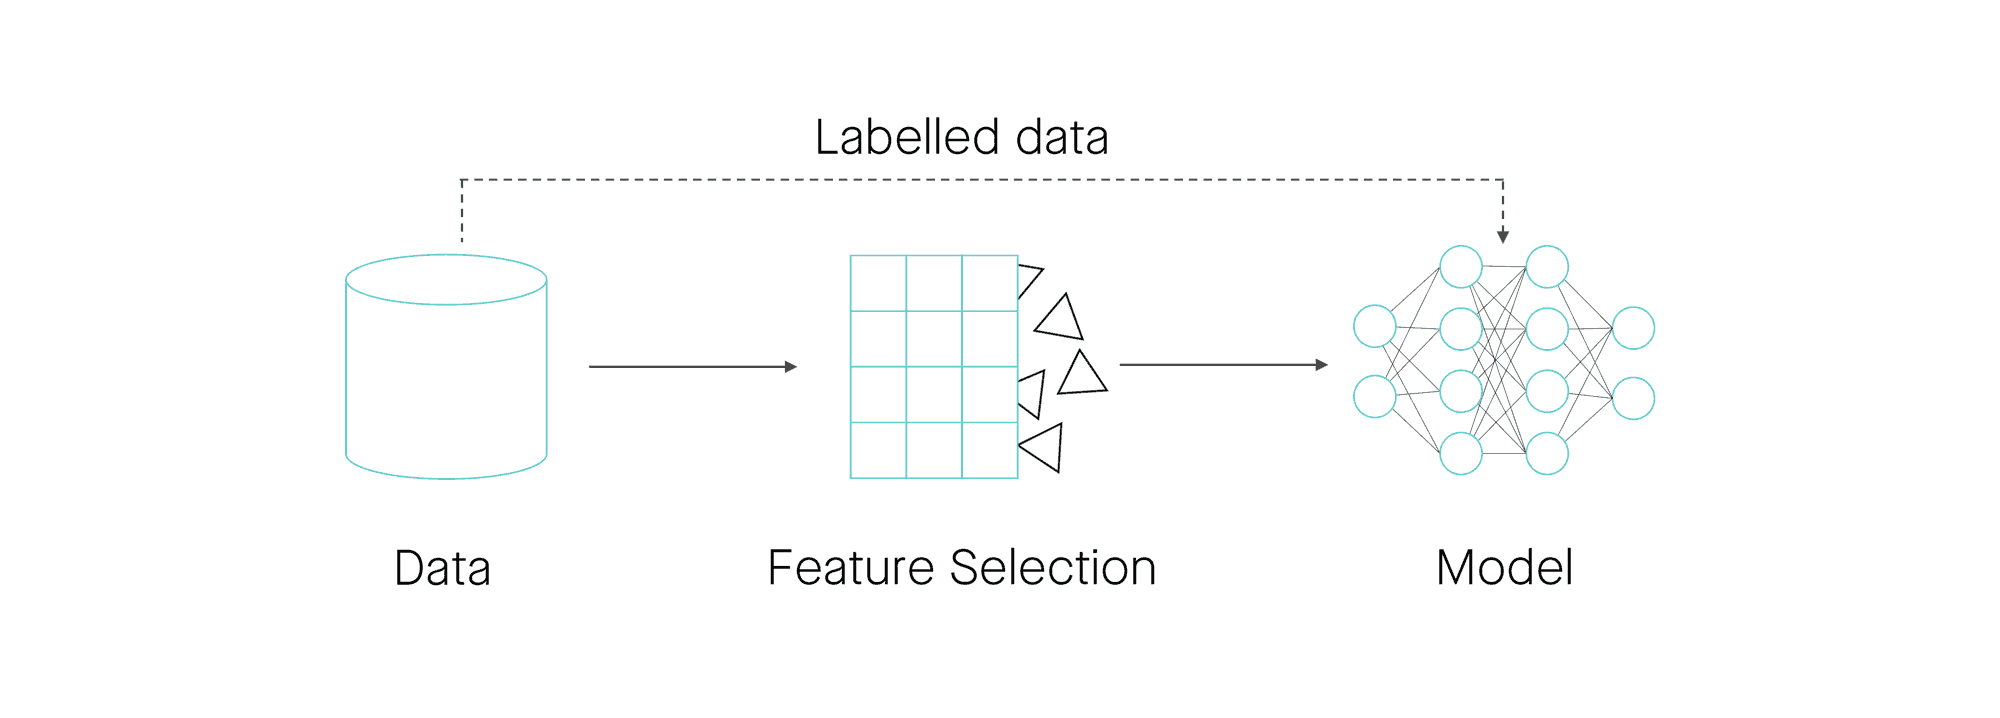 making sense of data entails modern techniques like bert